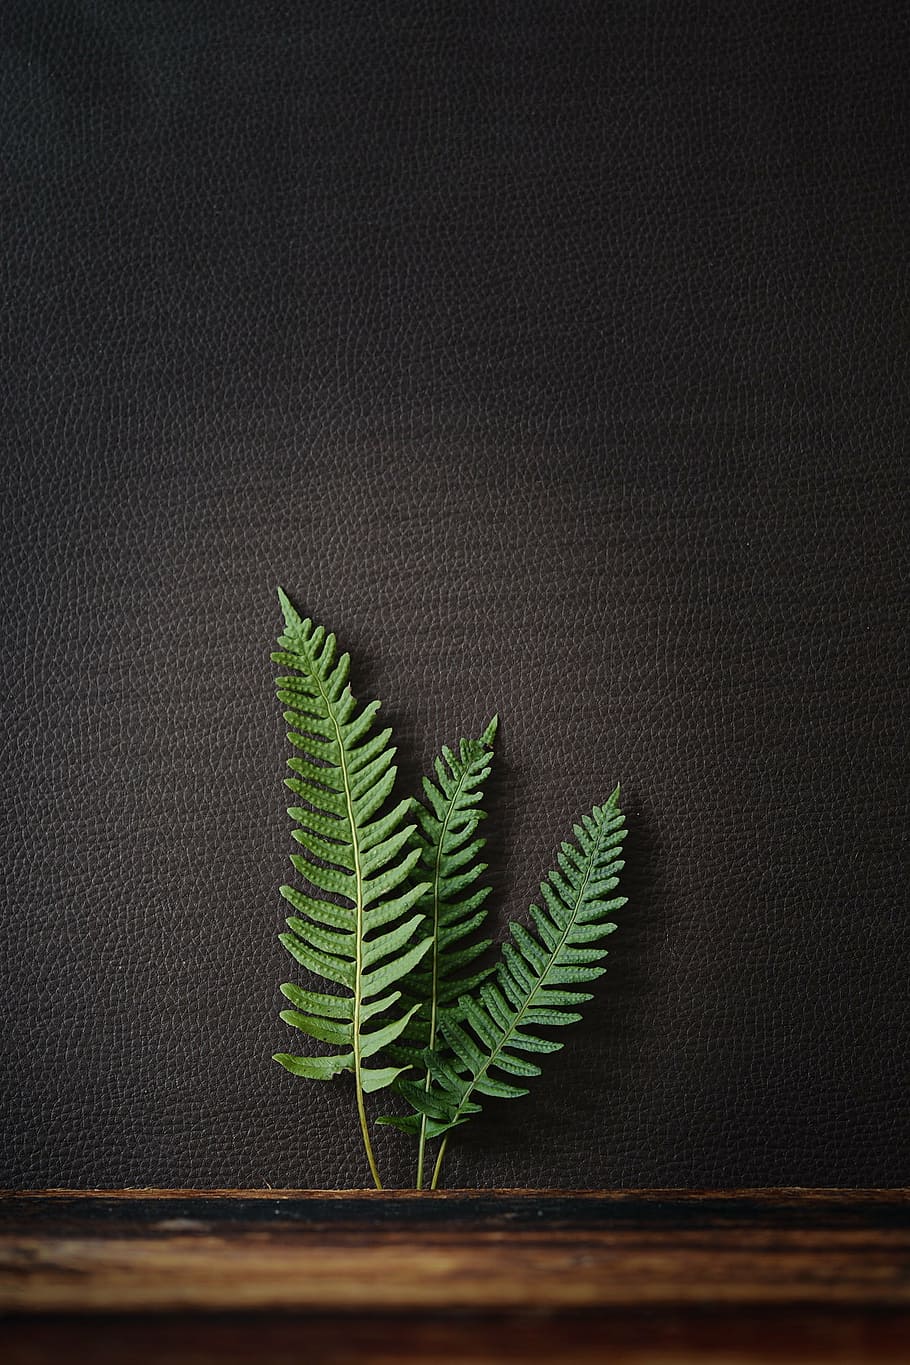 três, verde, folha de samambaia, preto, foto de close-up de superfície de couro, samambaia, planta, natureza, planta de samambaia, folhas